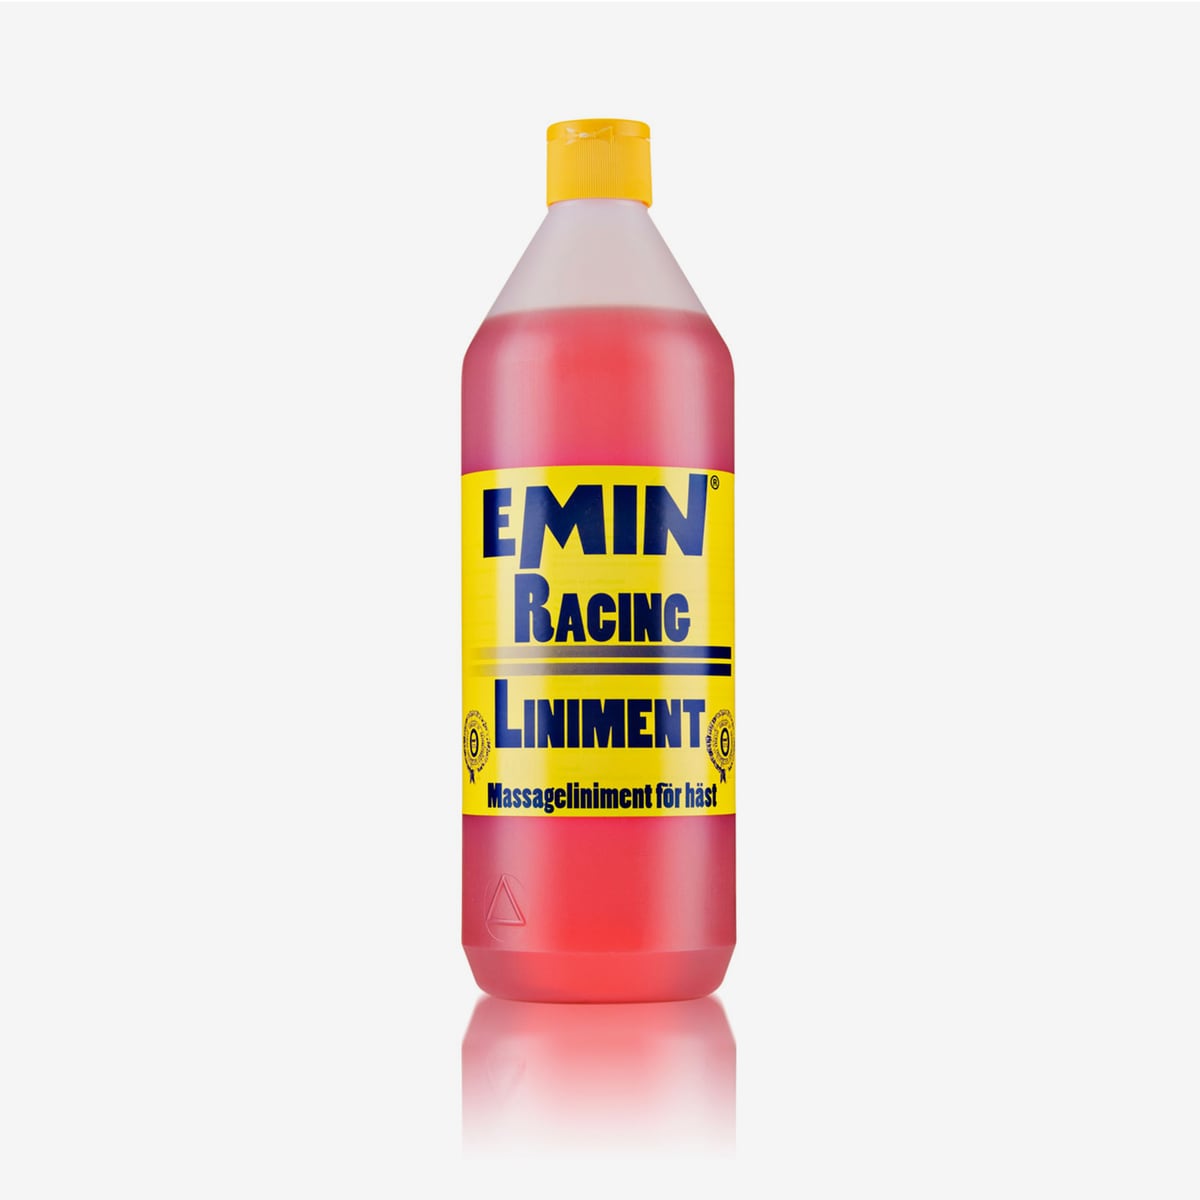 Emin Racing linimentti, 1 L